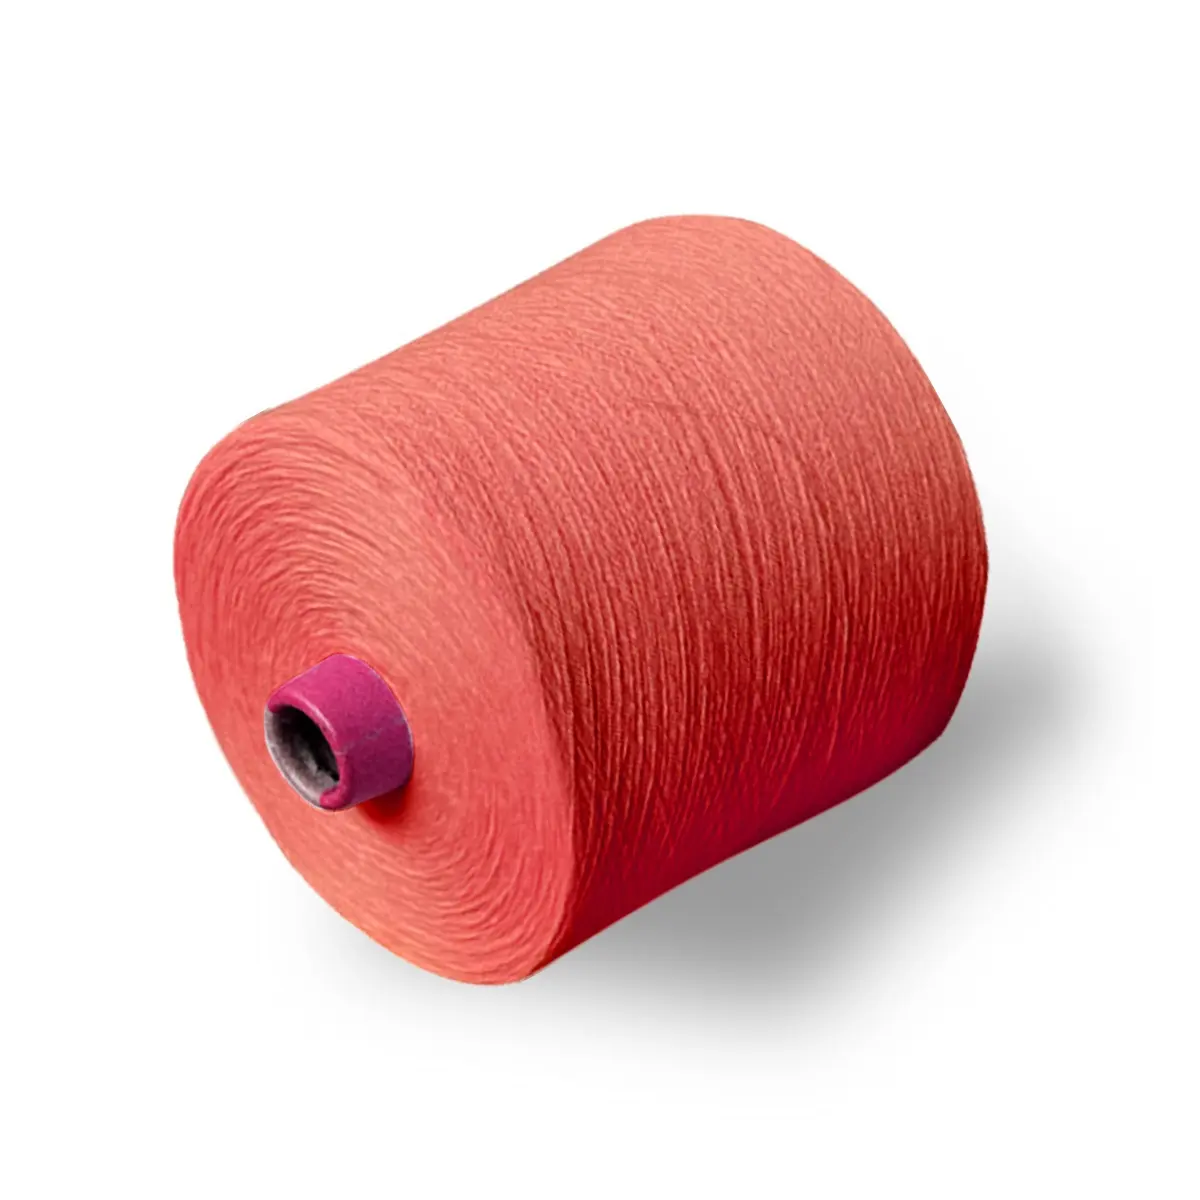 Носки и свитера, вязание или плетение из бамбукового волокна, поддержка цвета под заказ